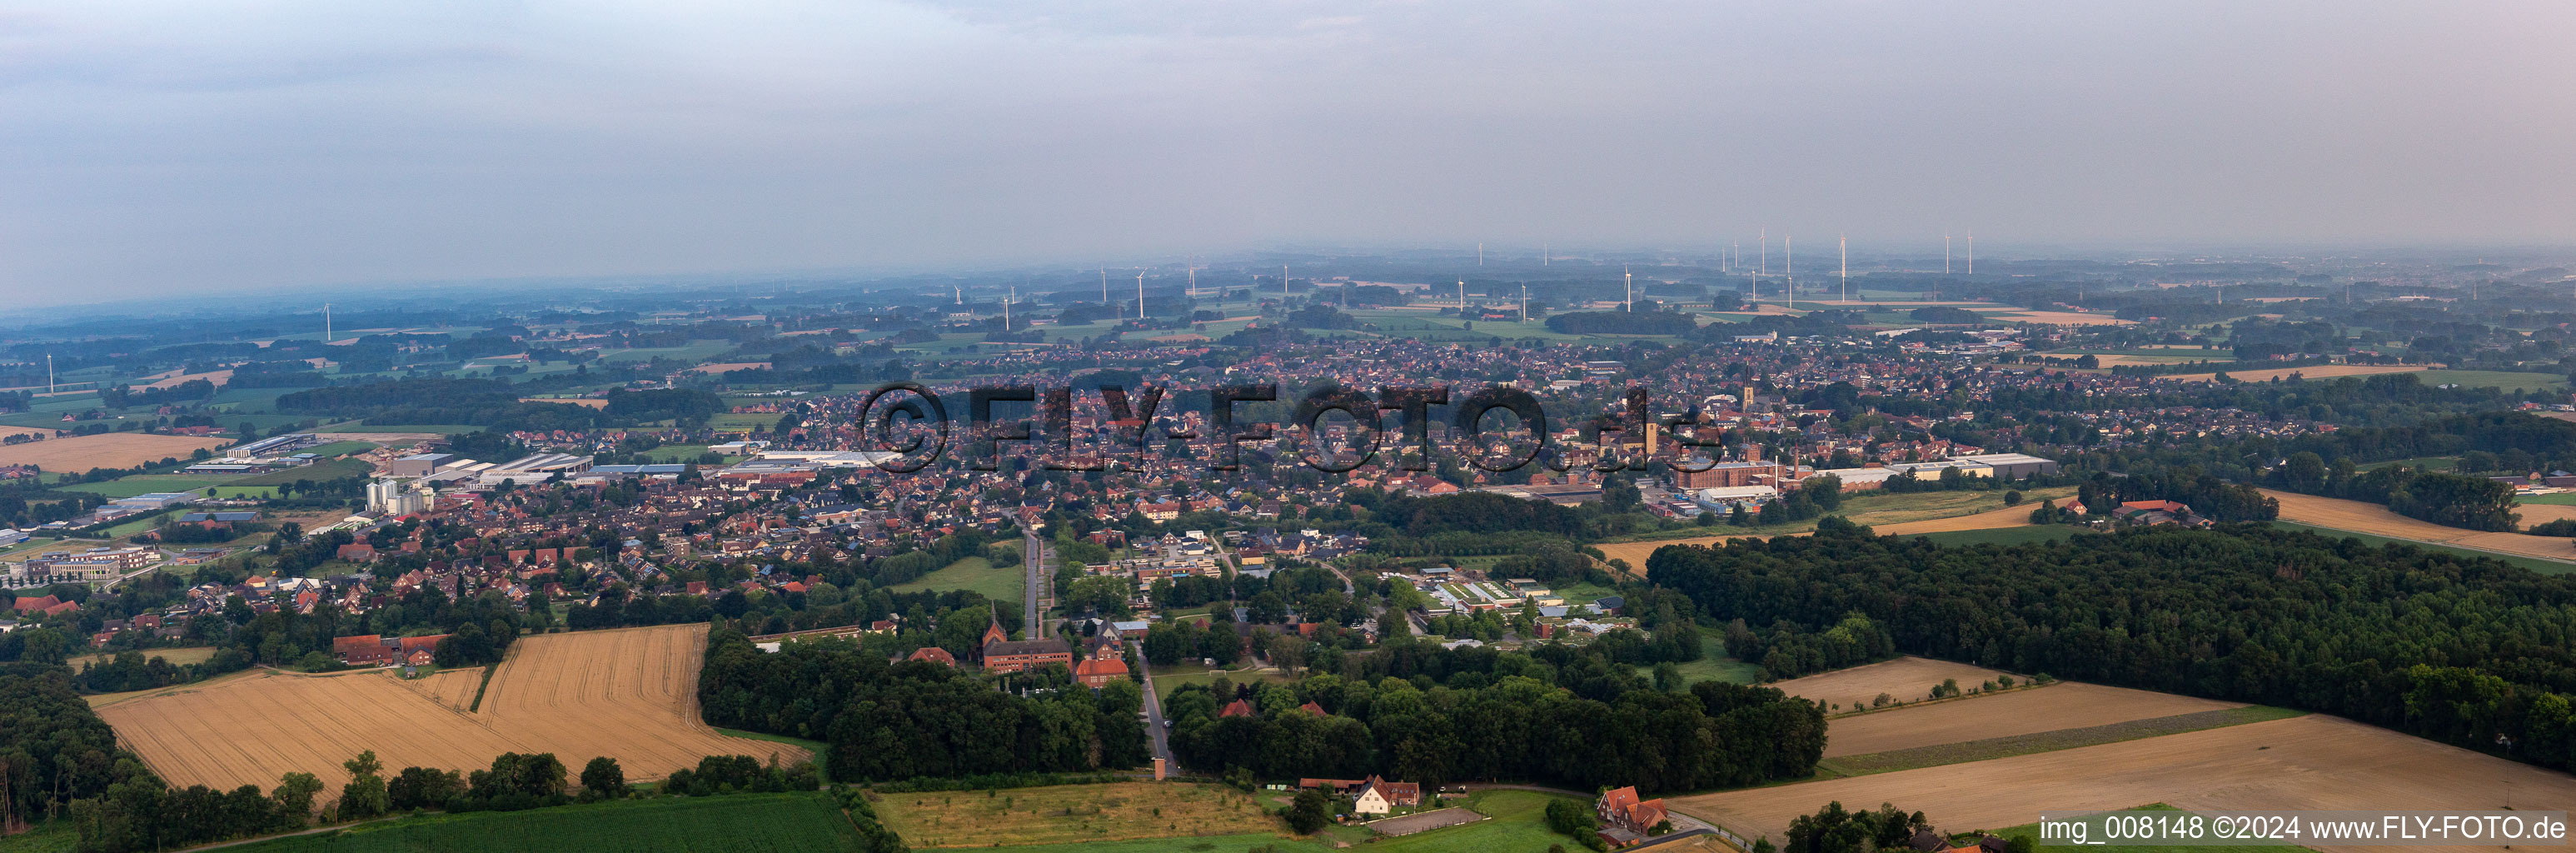 Panorama Stadtgebiet mit Außenbezirken und Innenstadtbereich in Gescher im Bundesland Nordrhein-Westfalen, Deutschland